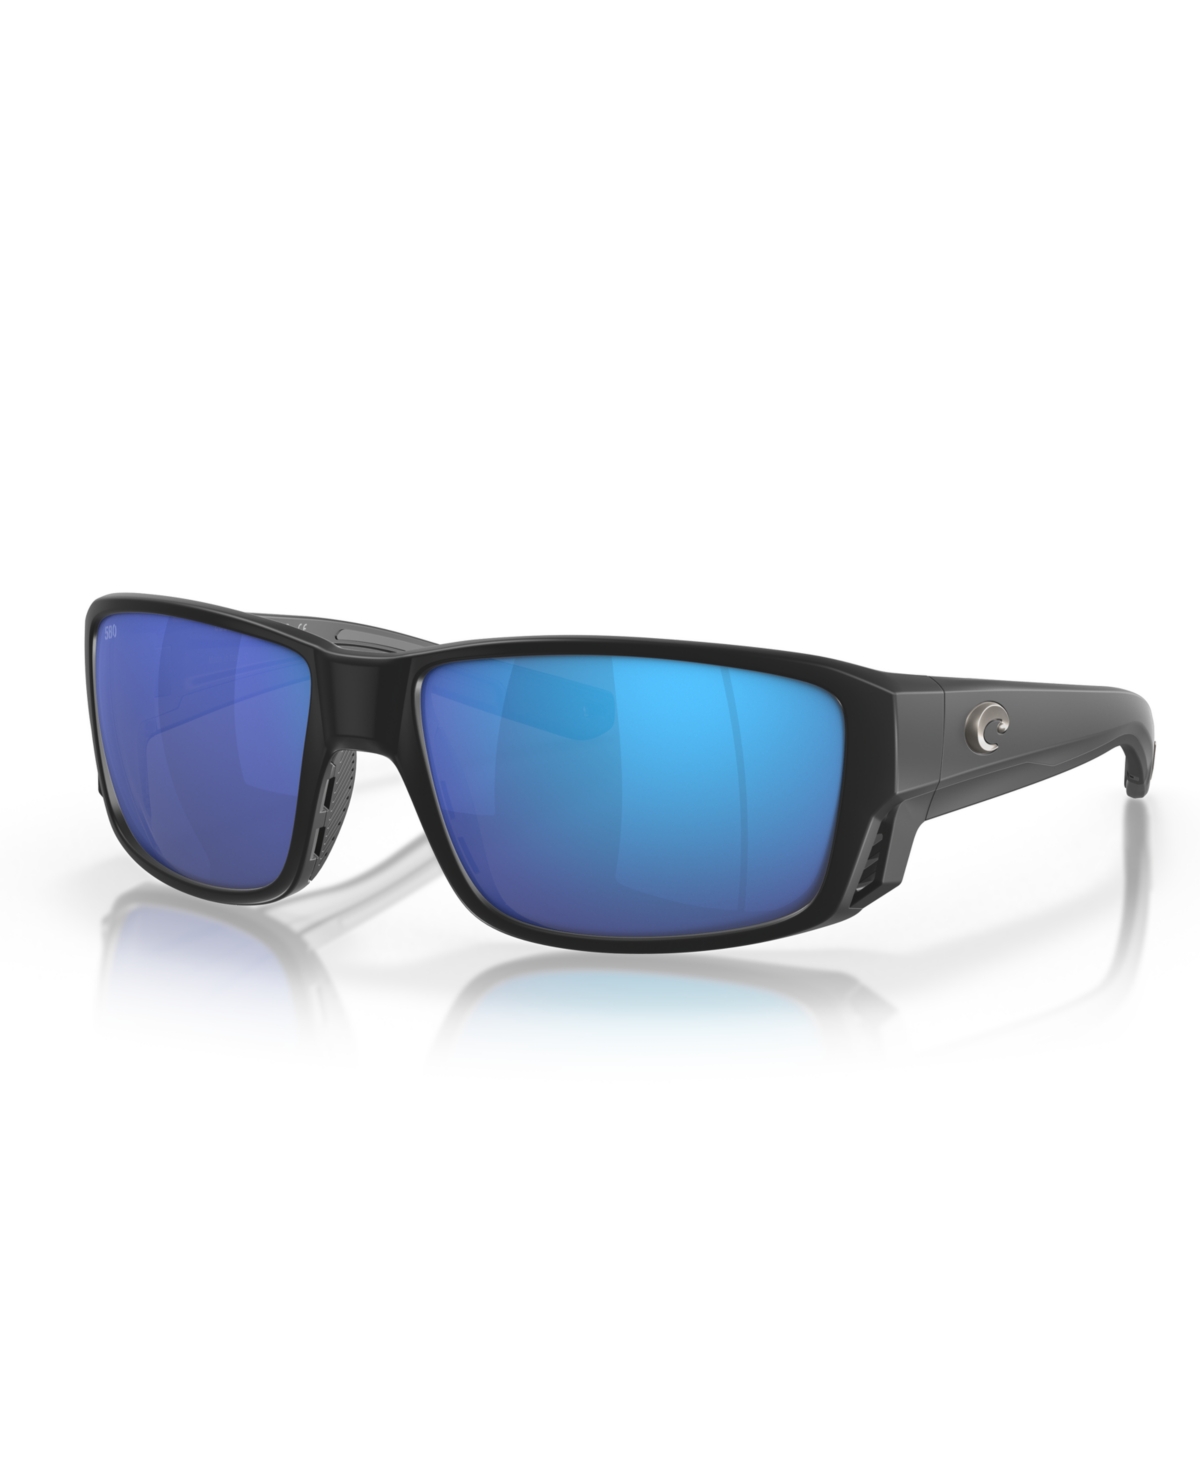 Men's Polarized Sunglasses, Tuna Alley Pro 6S9105 - Matte Black